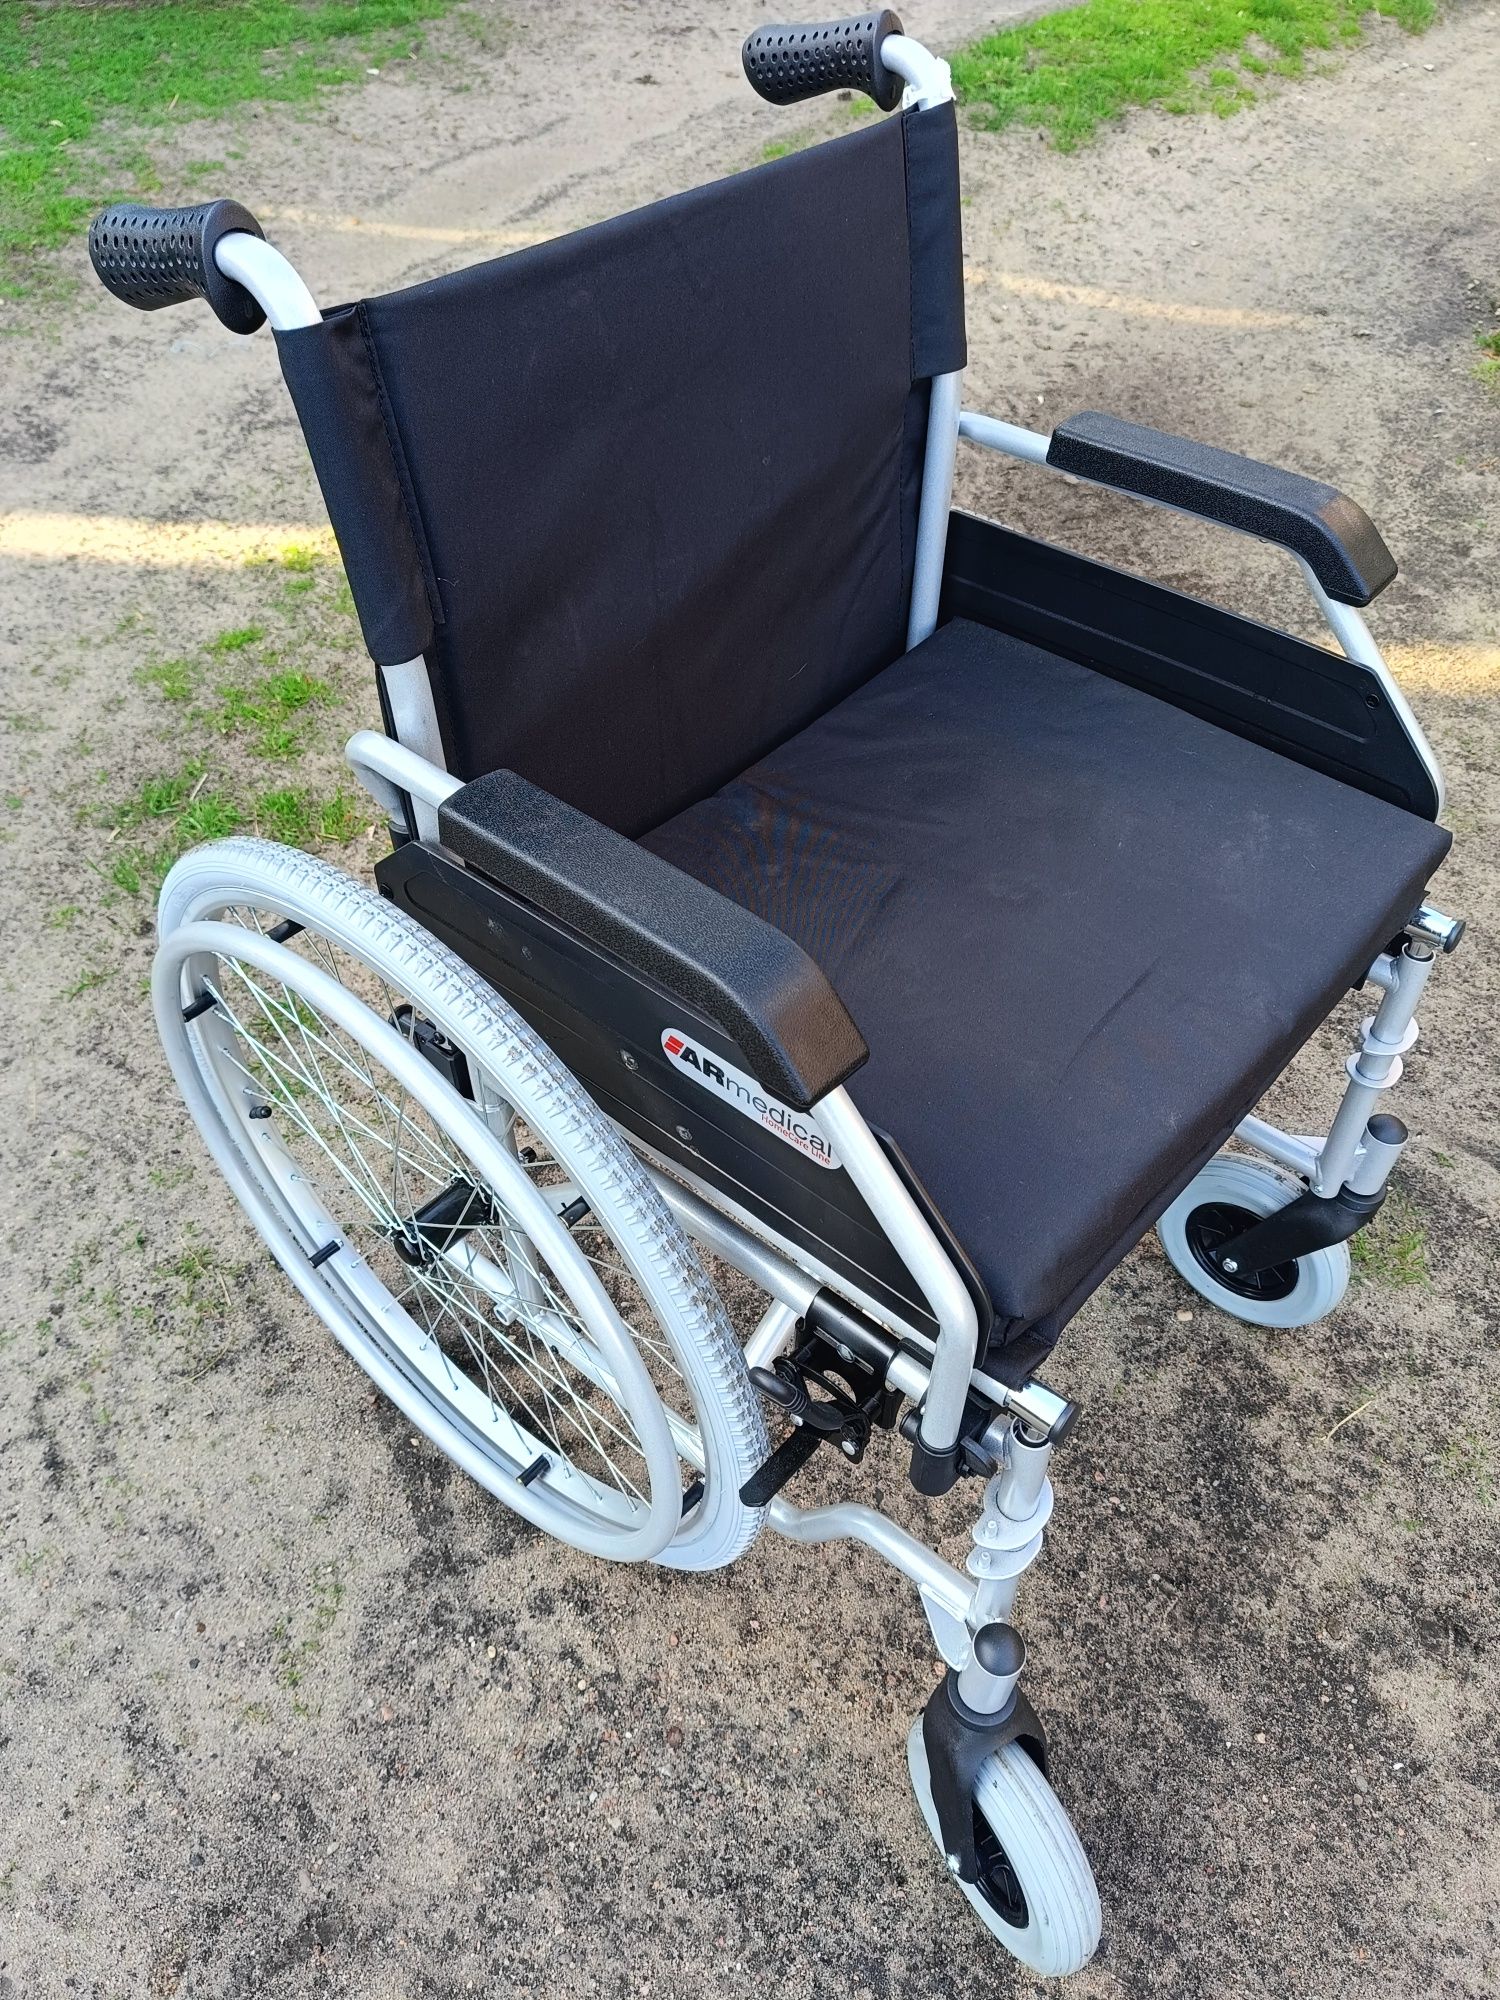 Wózek inwalidzki stalowy